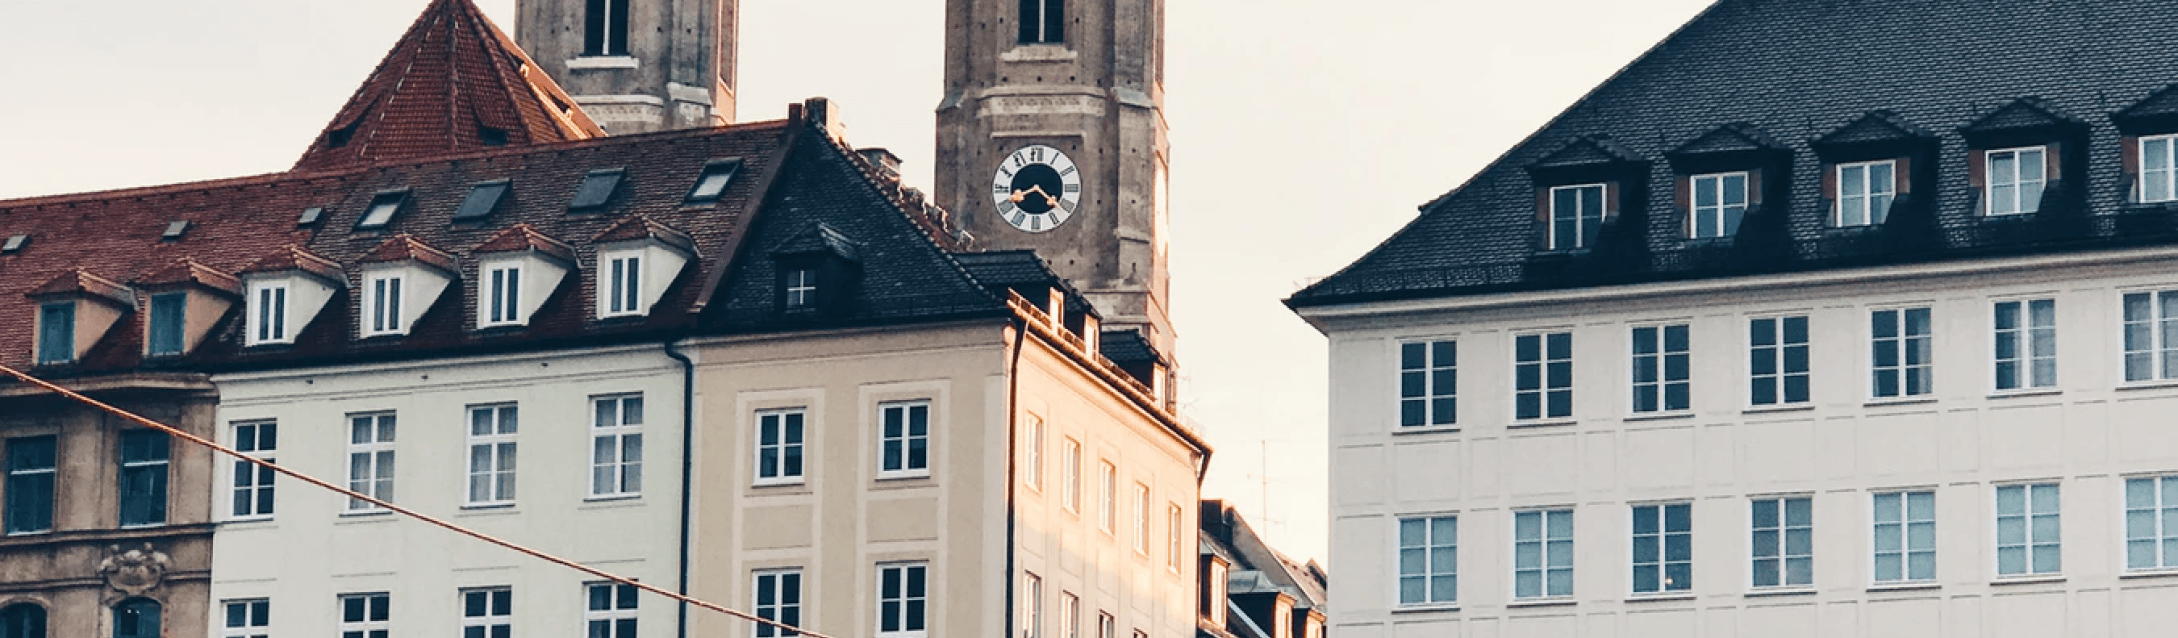 Bild der Frauenkirche in München